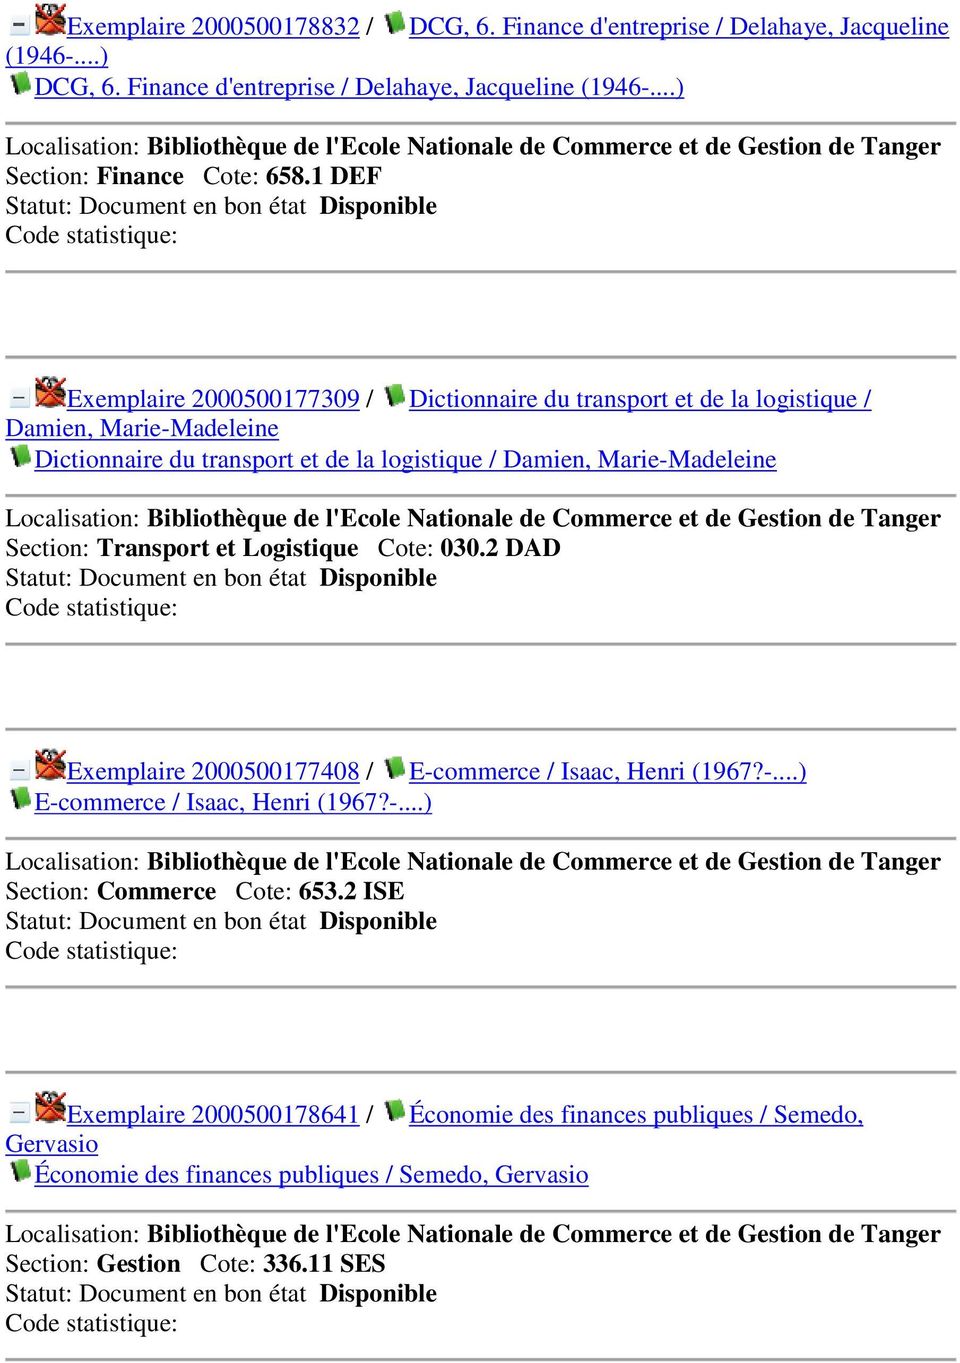 Section: Transport et Logistique Cote: 030.2 DAD Exemplaire 2000500177408 / E-commerce / Isaac, Henri (1967?-...) E-commerce / Isaac, Henri (1967?-...) Section: Commerce Cote: 653.